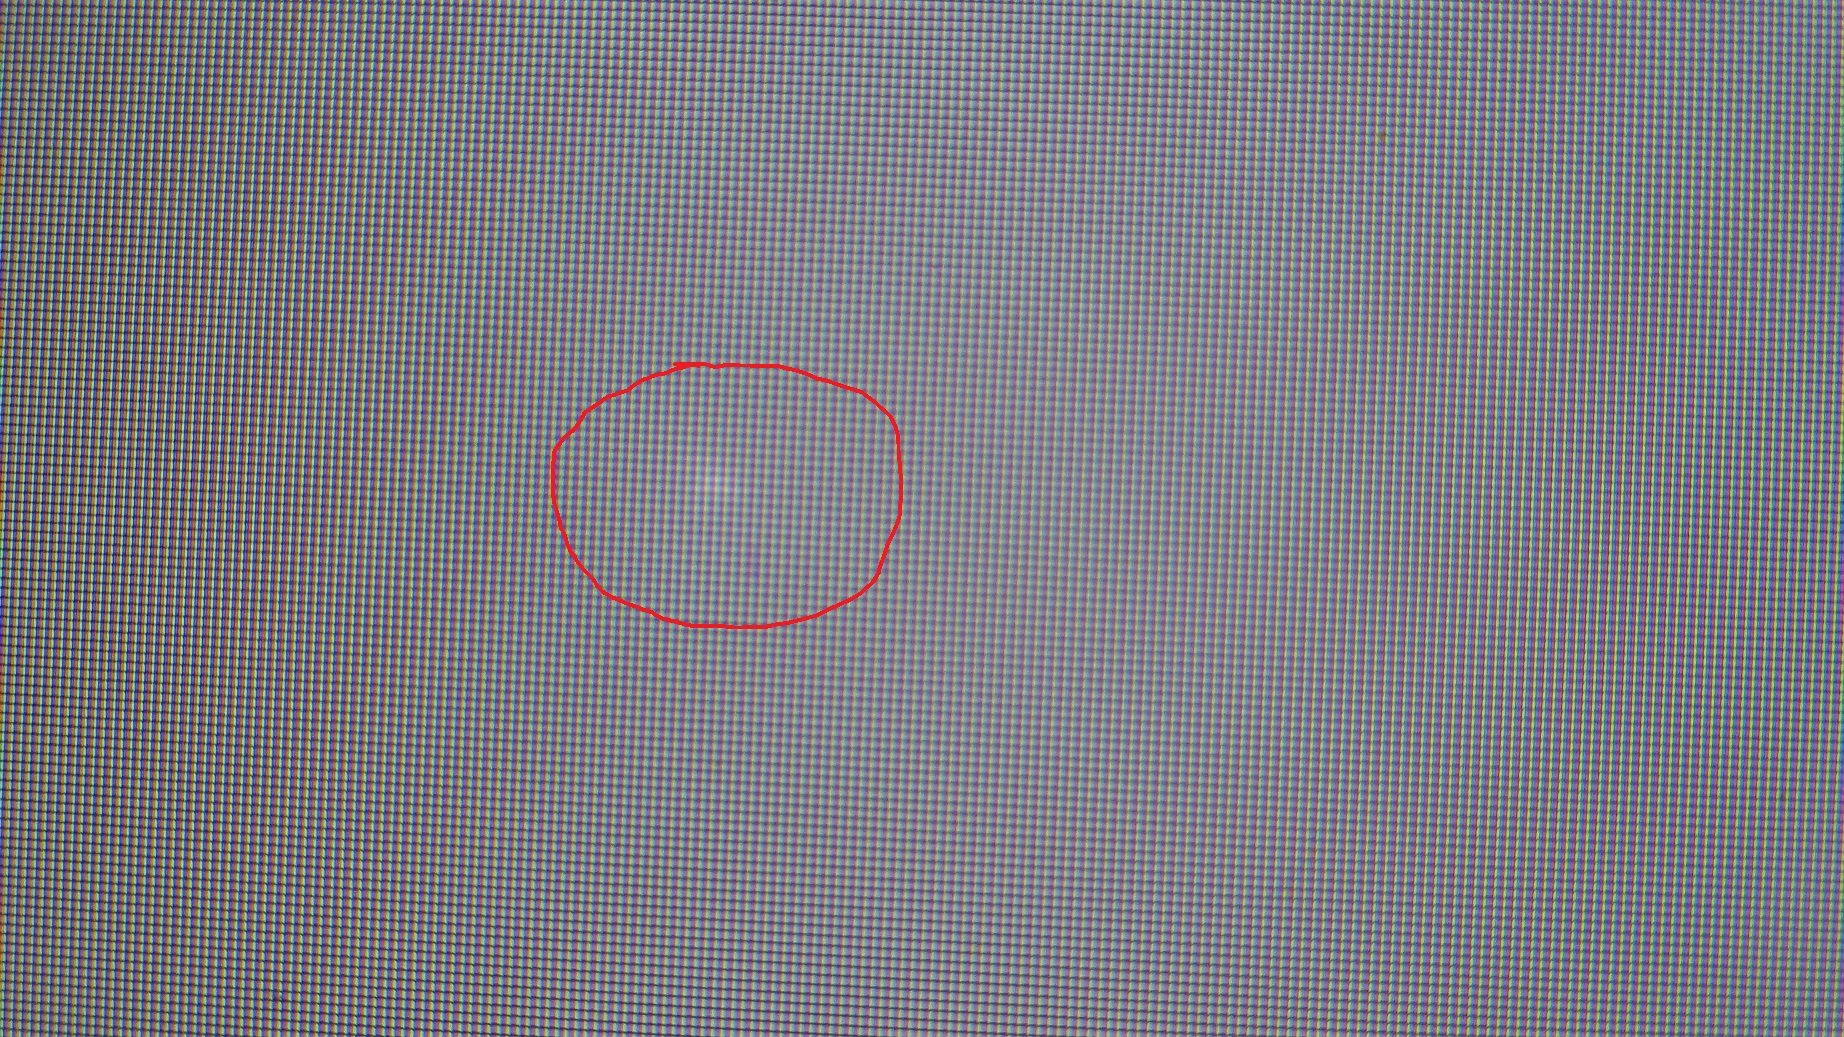 Битые пиксели на матрице. Белые точки н амониторн. Белое пятно на экране. Маленькая точка на экране. Темные пиксели на мониторе.